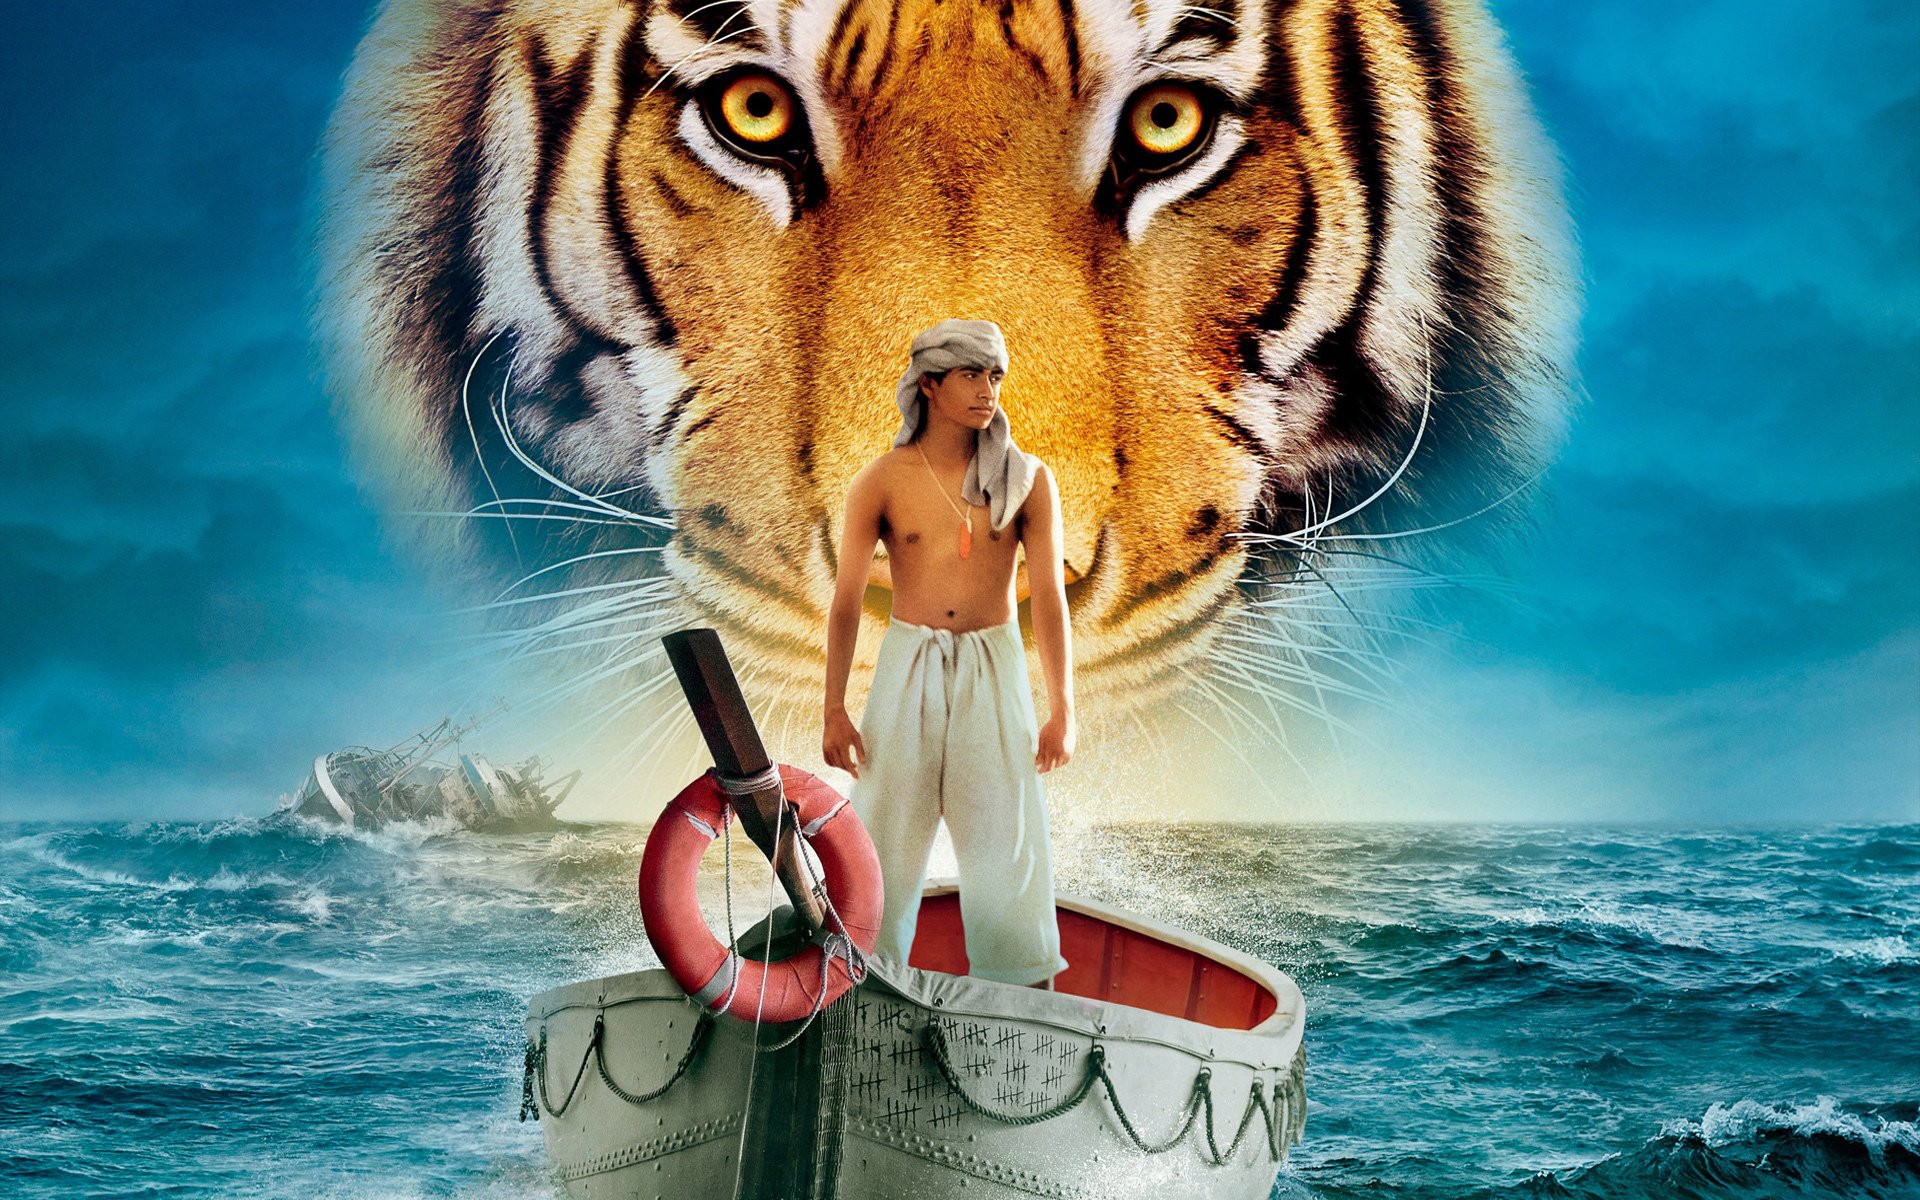 жизнь пи тигр парень лодка море вода корабль человек